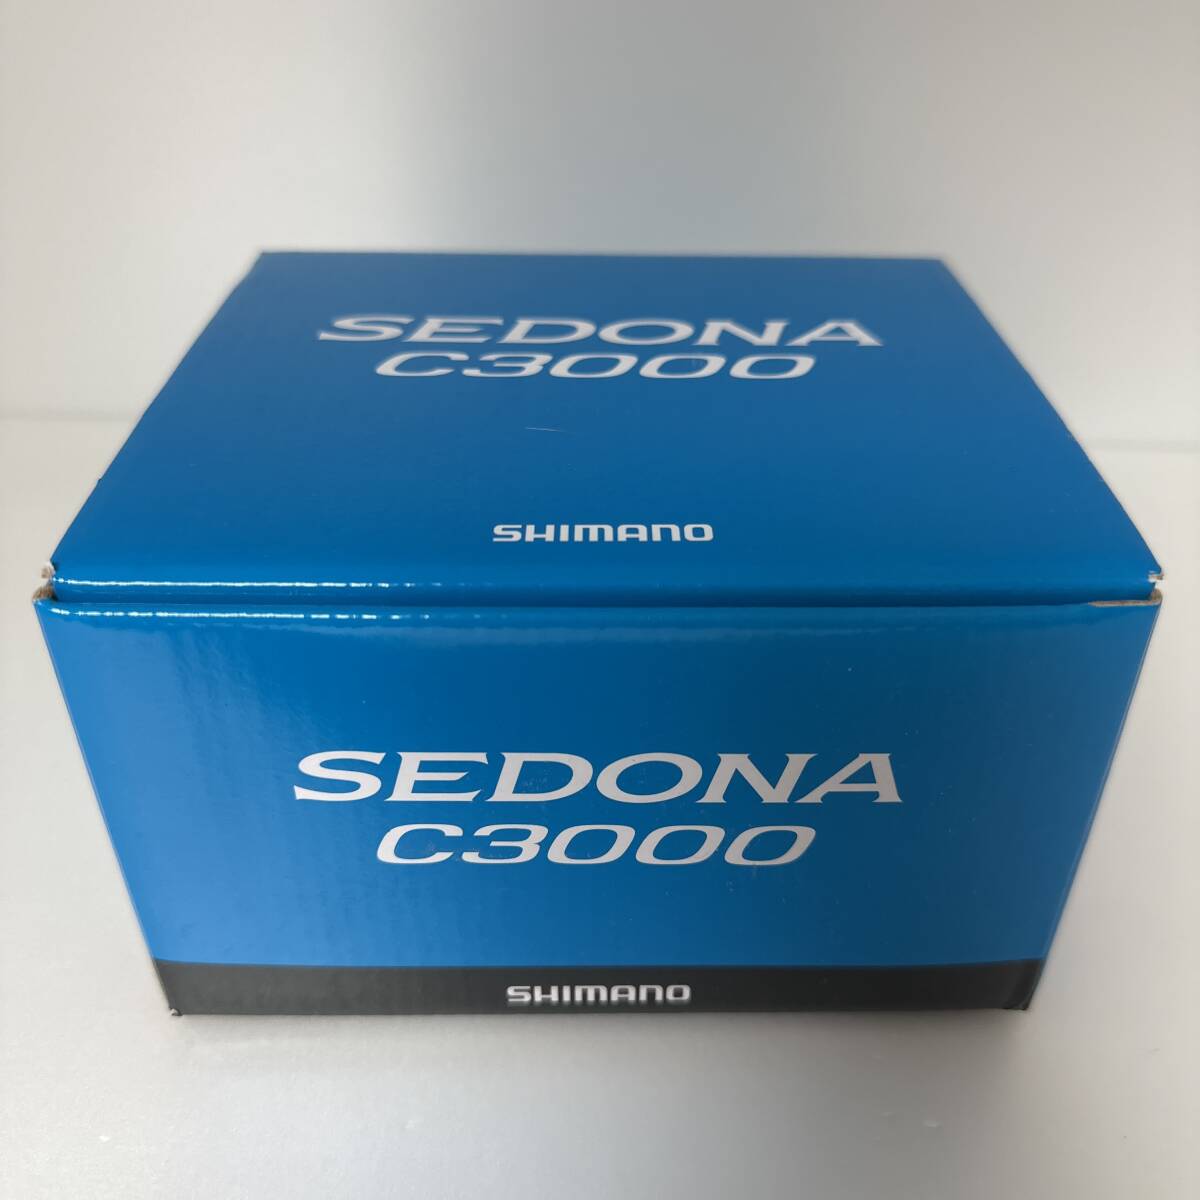 Shimano シマノ SEC3000FI Shimano Sedona C3000 FI - フィッシングリール、モデル2017 0515_画像1